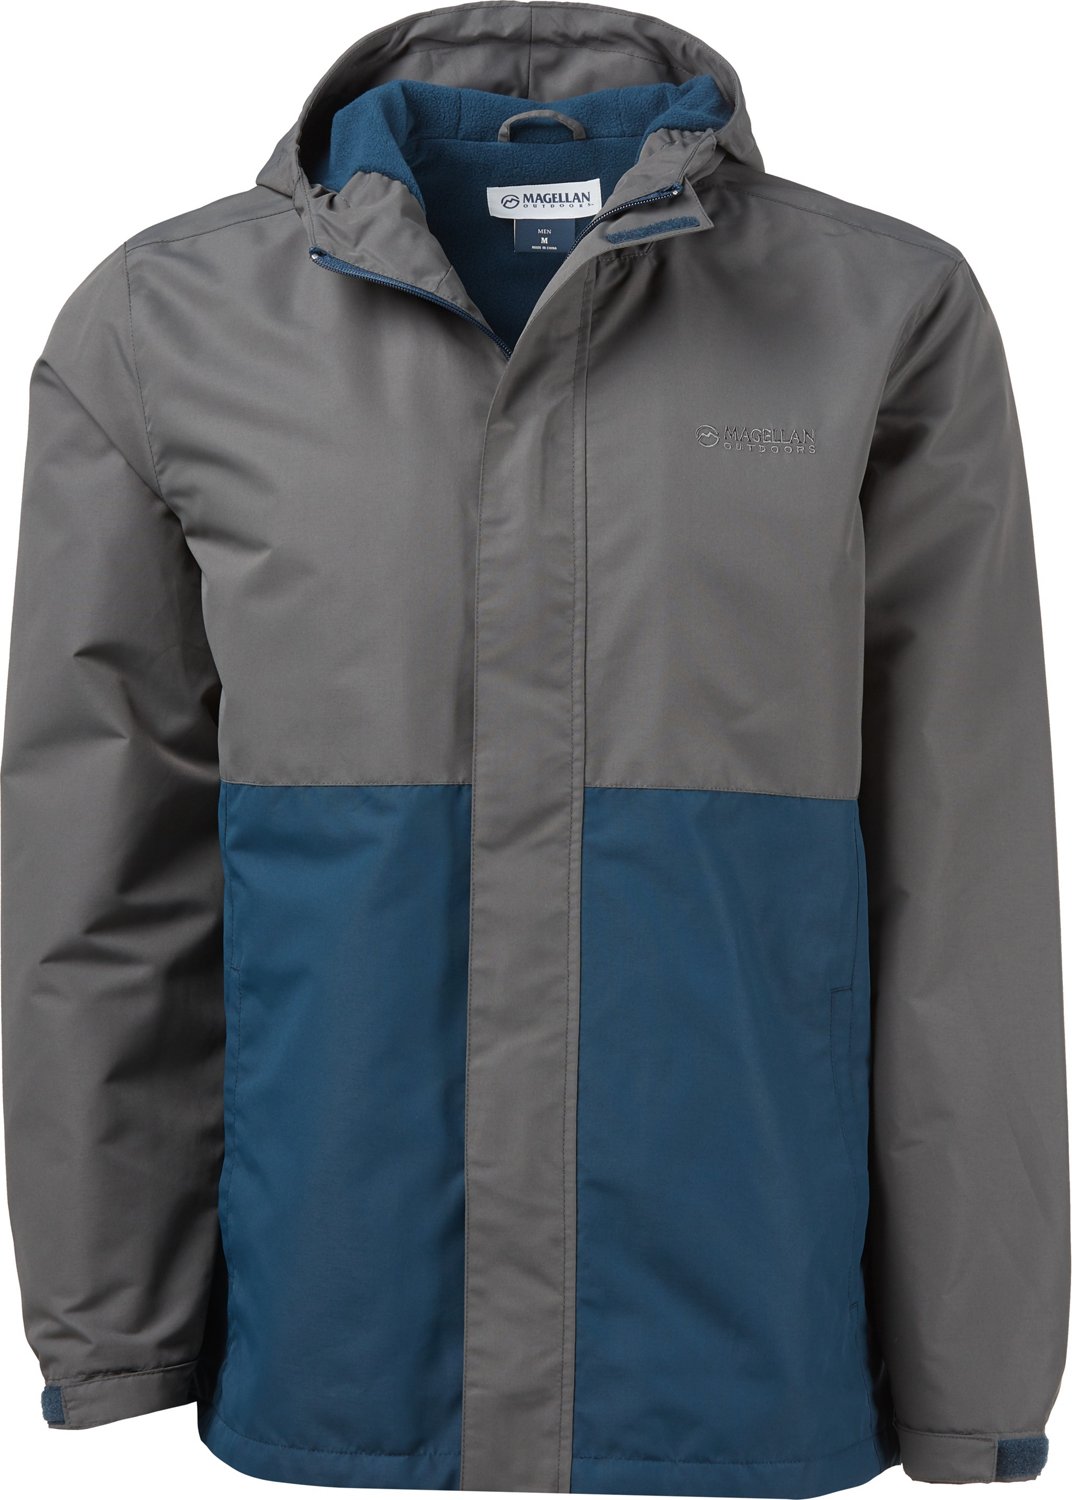 magellan waterfowl jacket